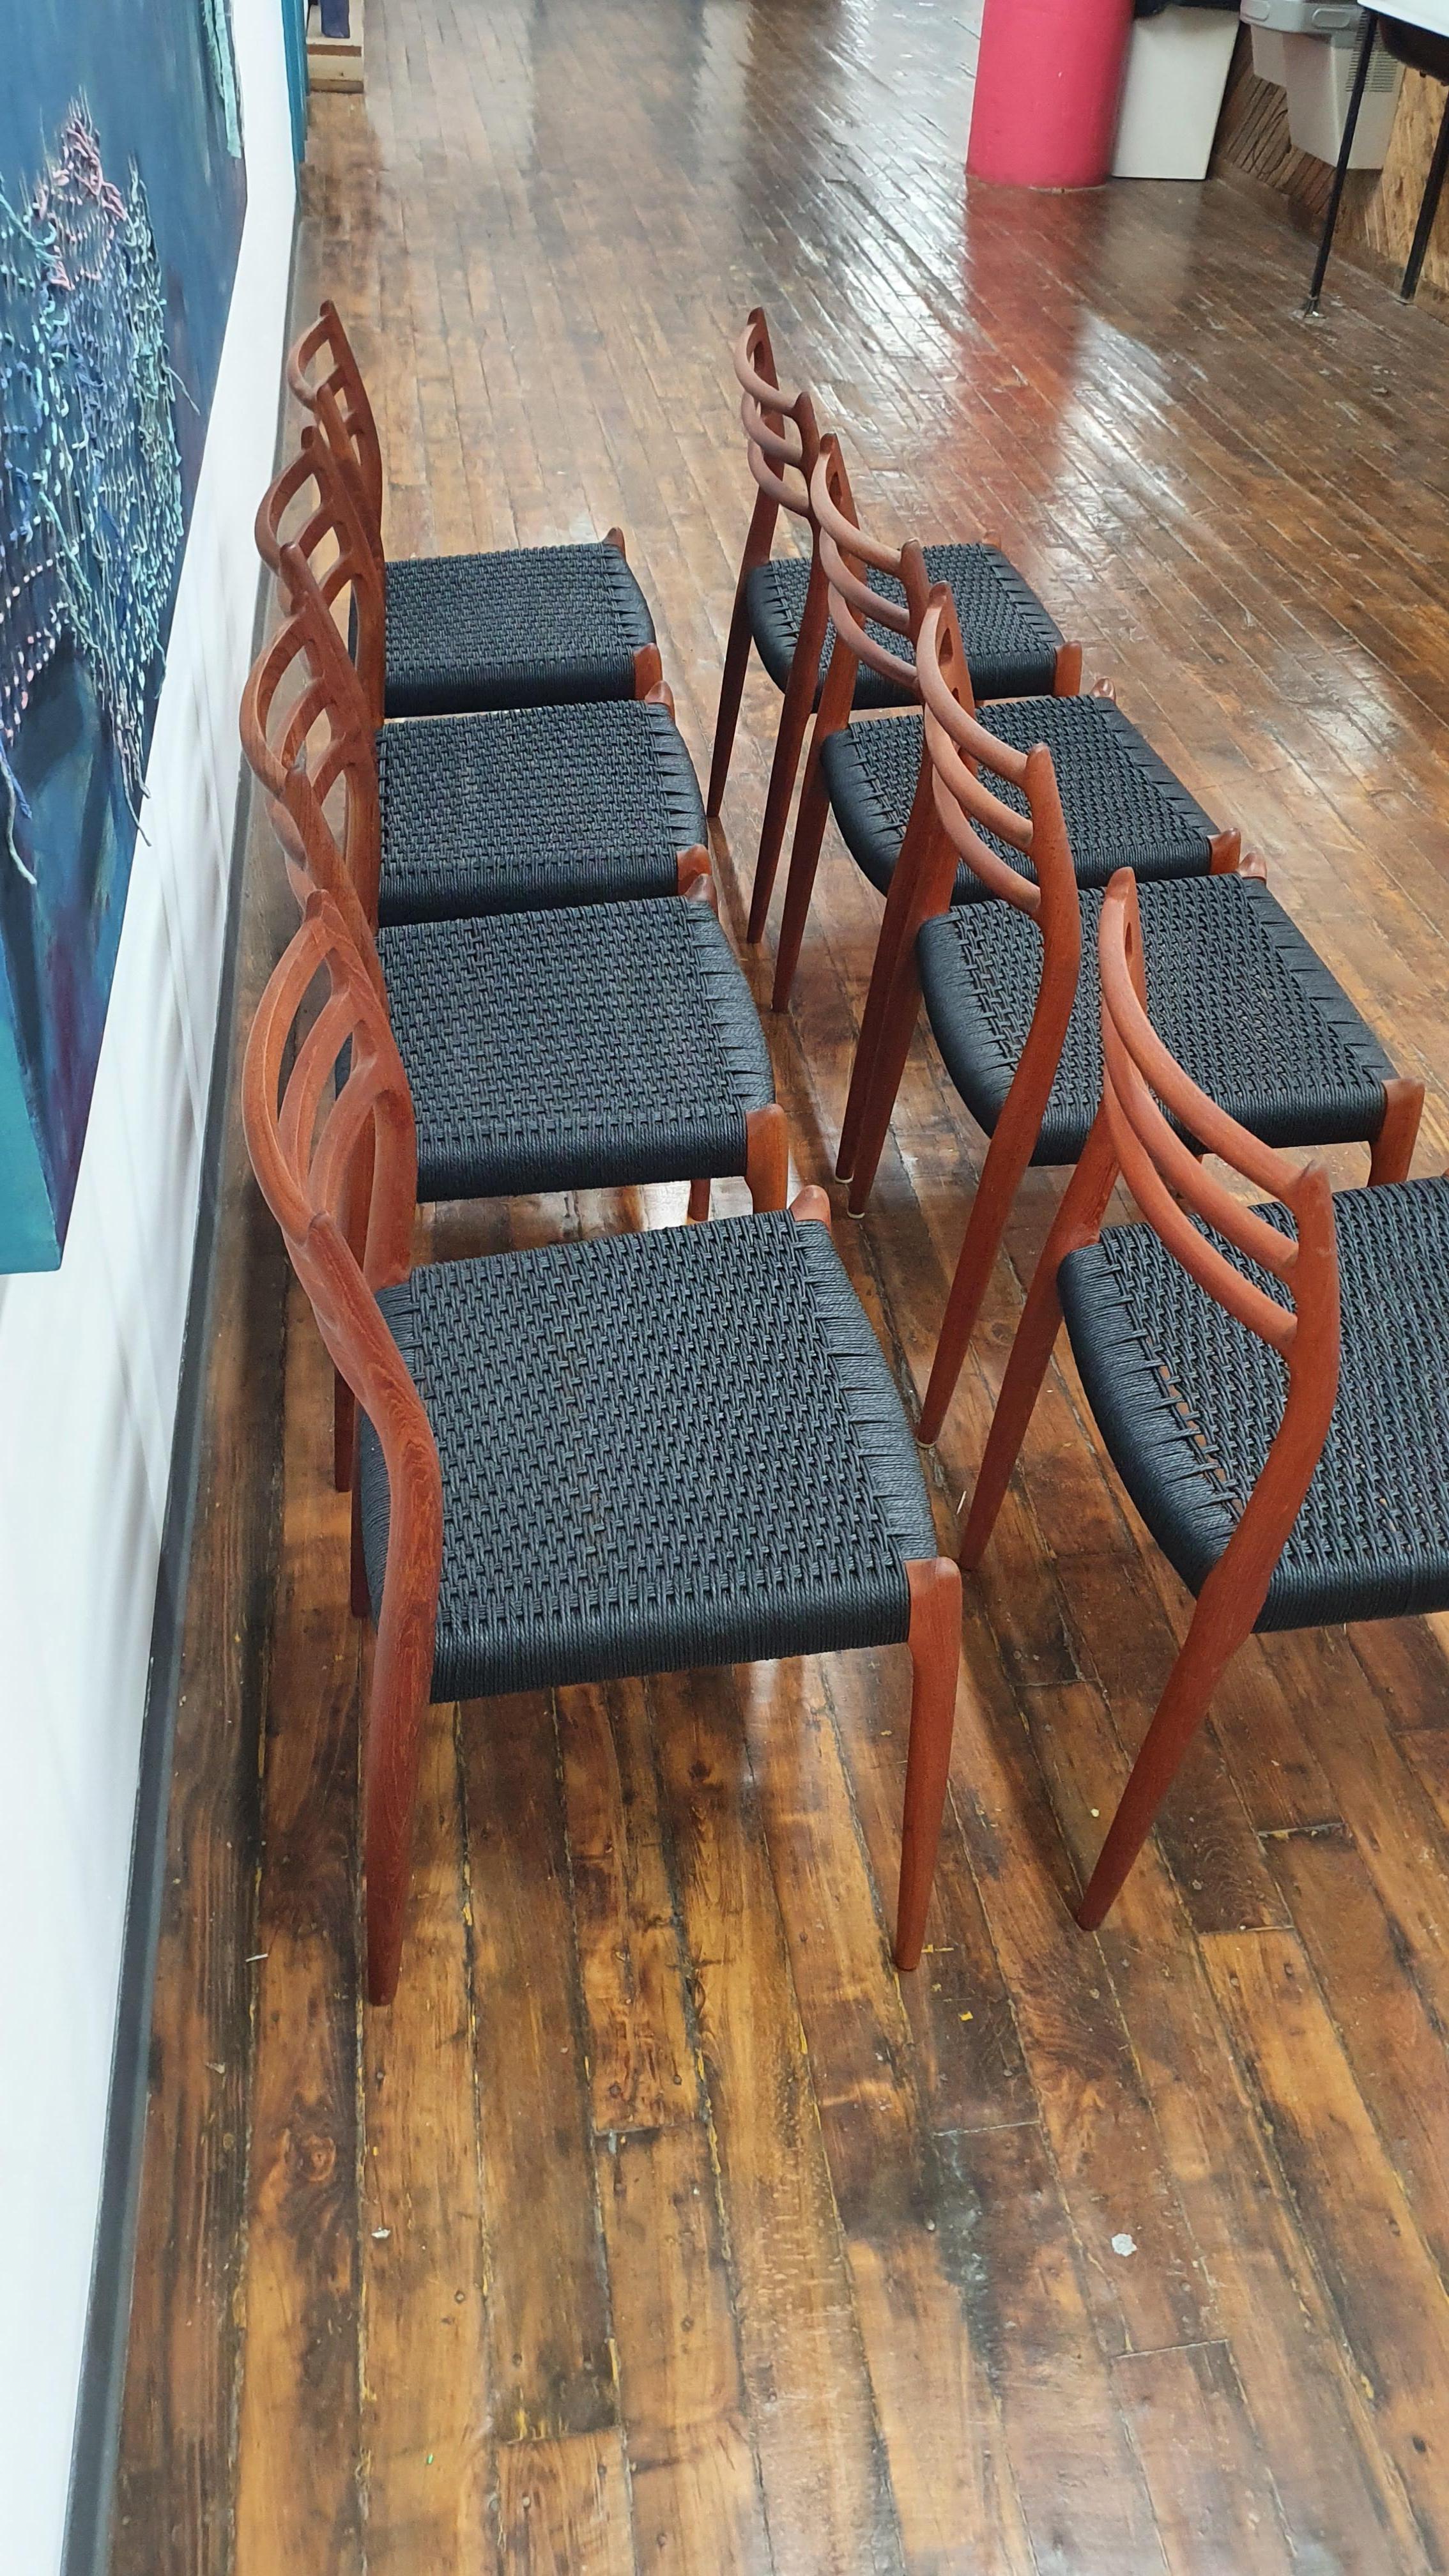 Schöner Satz von 8 Moller-Stühlen, Modell 78 mit neuer schwarzer dänischer Kordel. Diese Stühle wurden aufgearbeitet und neu geölt. Es gibt einige Kratzer und Furchen in Teilen des Holzes, die die ausgezeichnete Vintage-Patina geben, während die